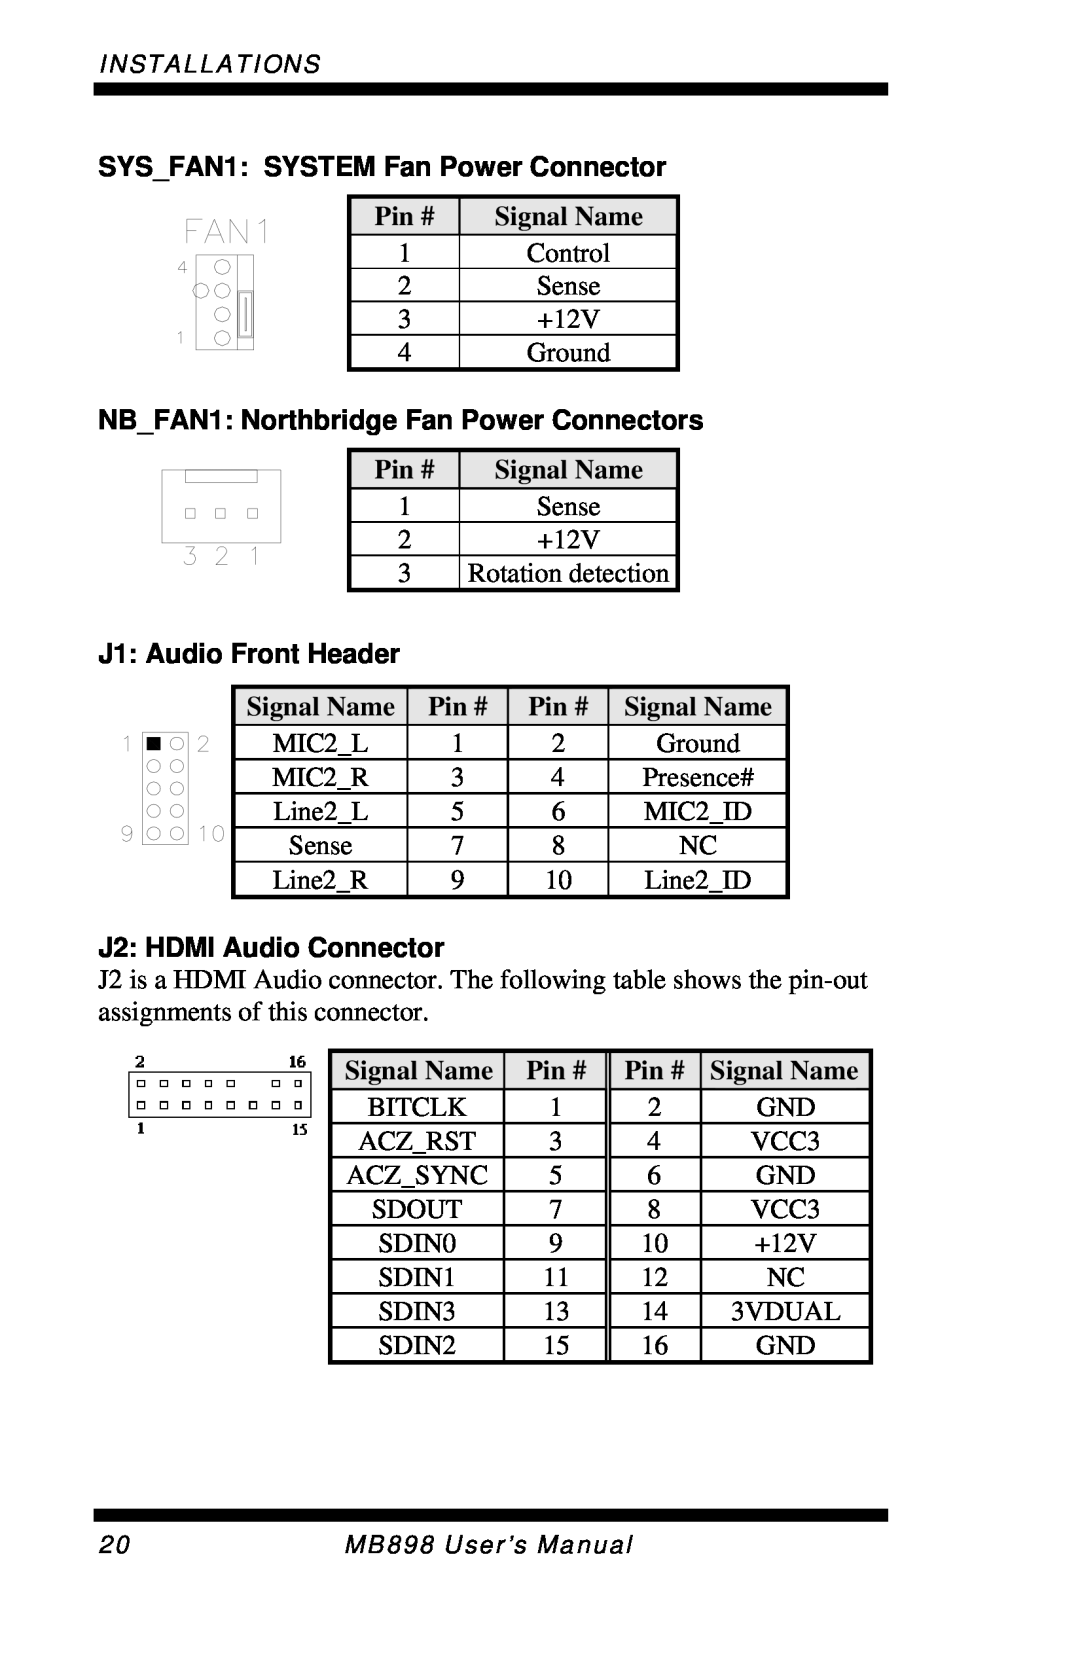 Intel MB898RF SYS_FAN1: SYSTEM Fan Power Connector, NB_FAN1: Northbridge Fan Power Connectors, J1: Audio Front Header 